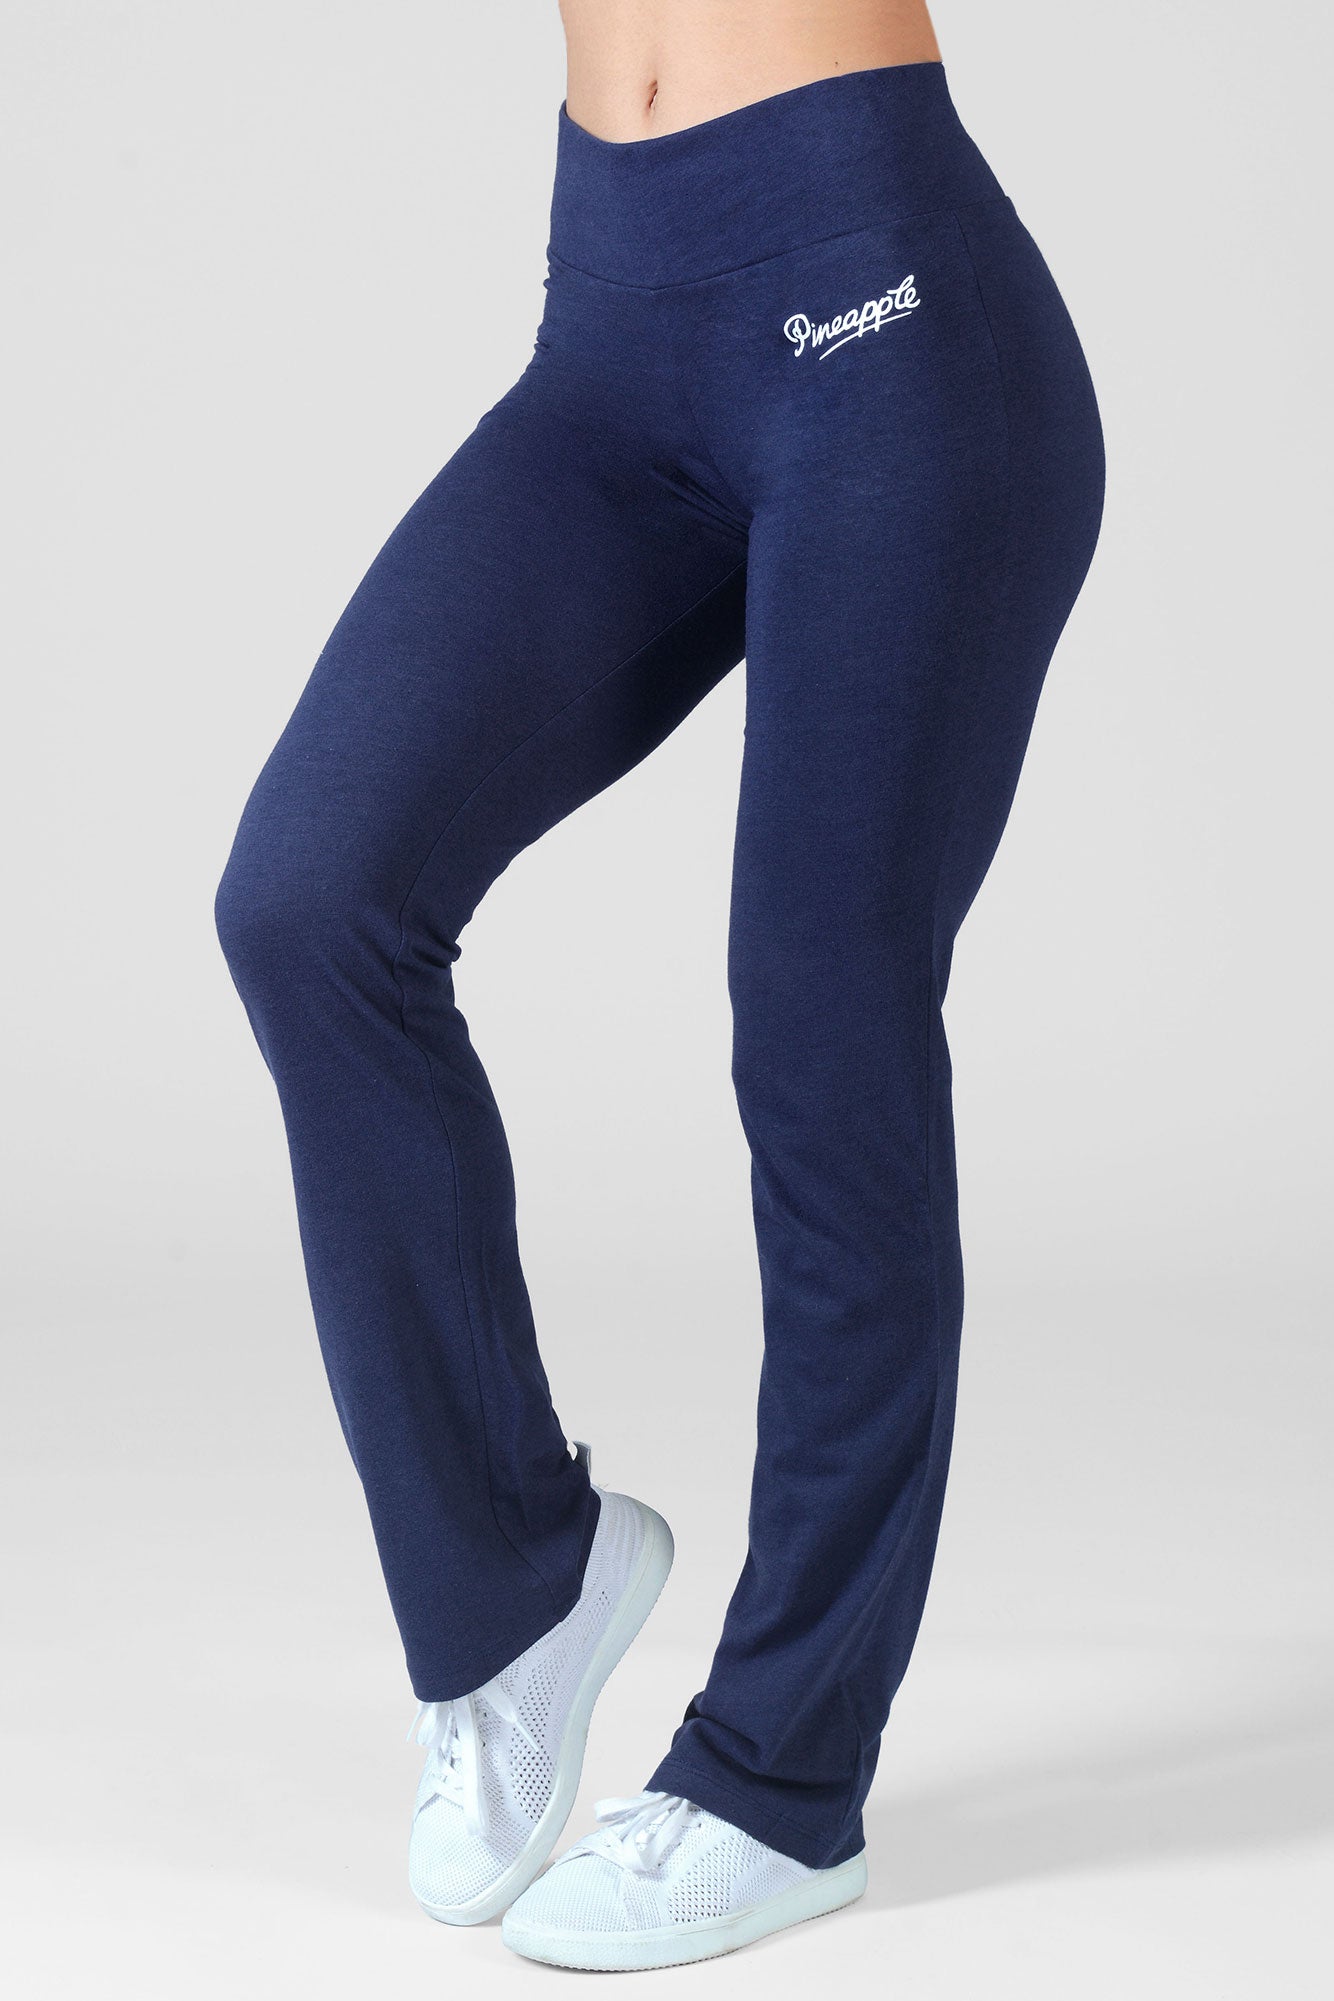 Women's Bootcut Trousers, Bootcut Yoga Pants